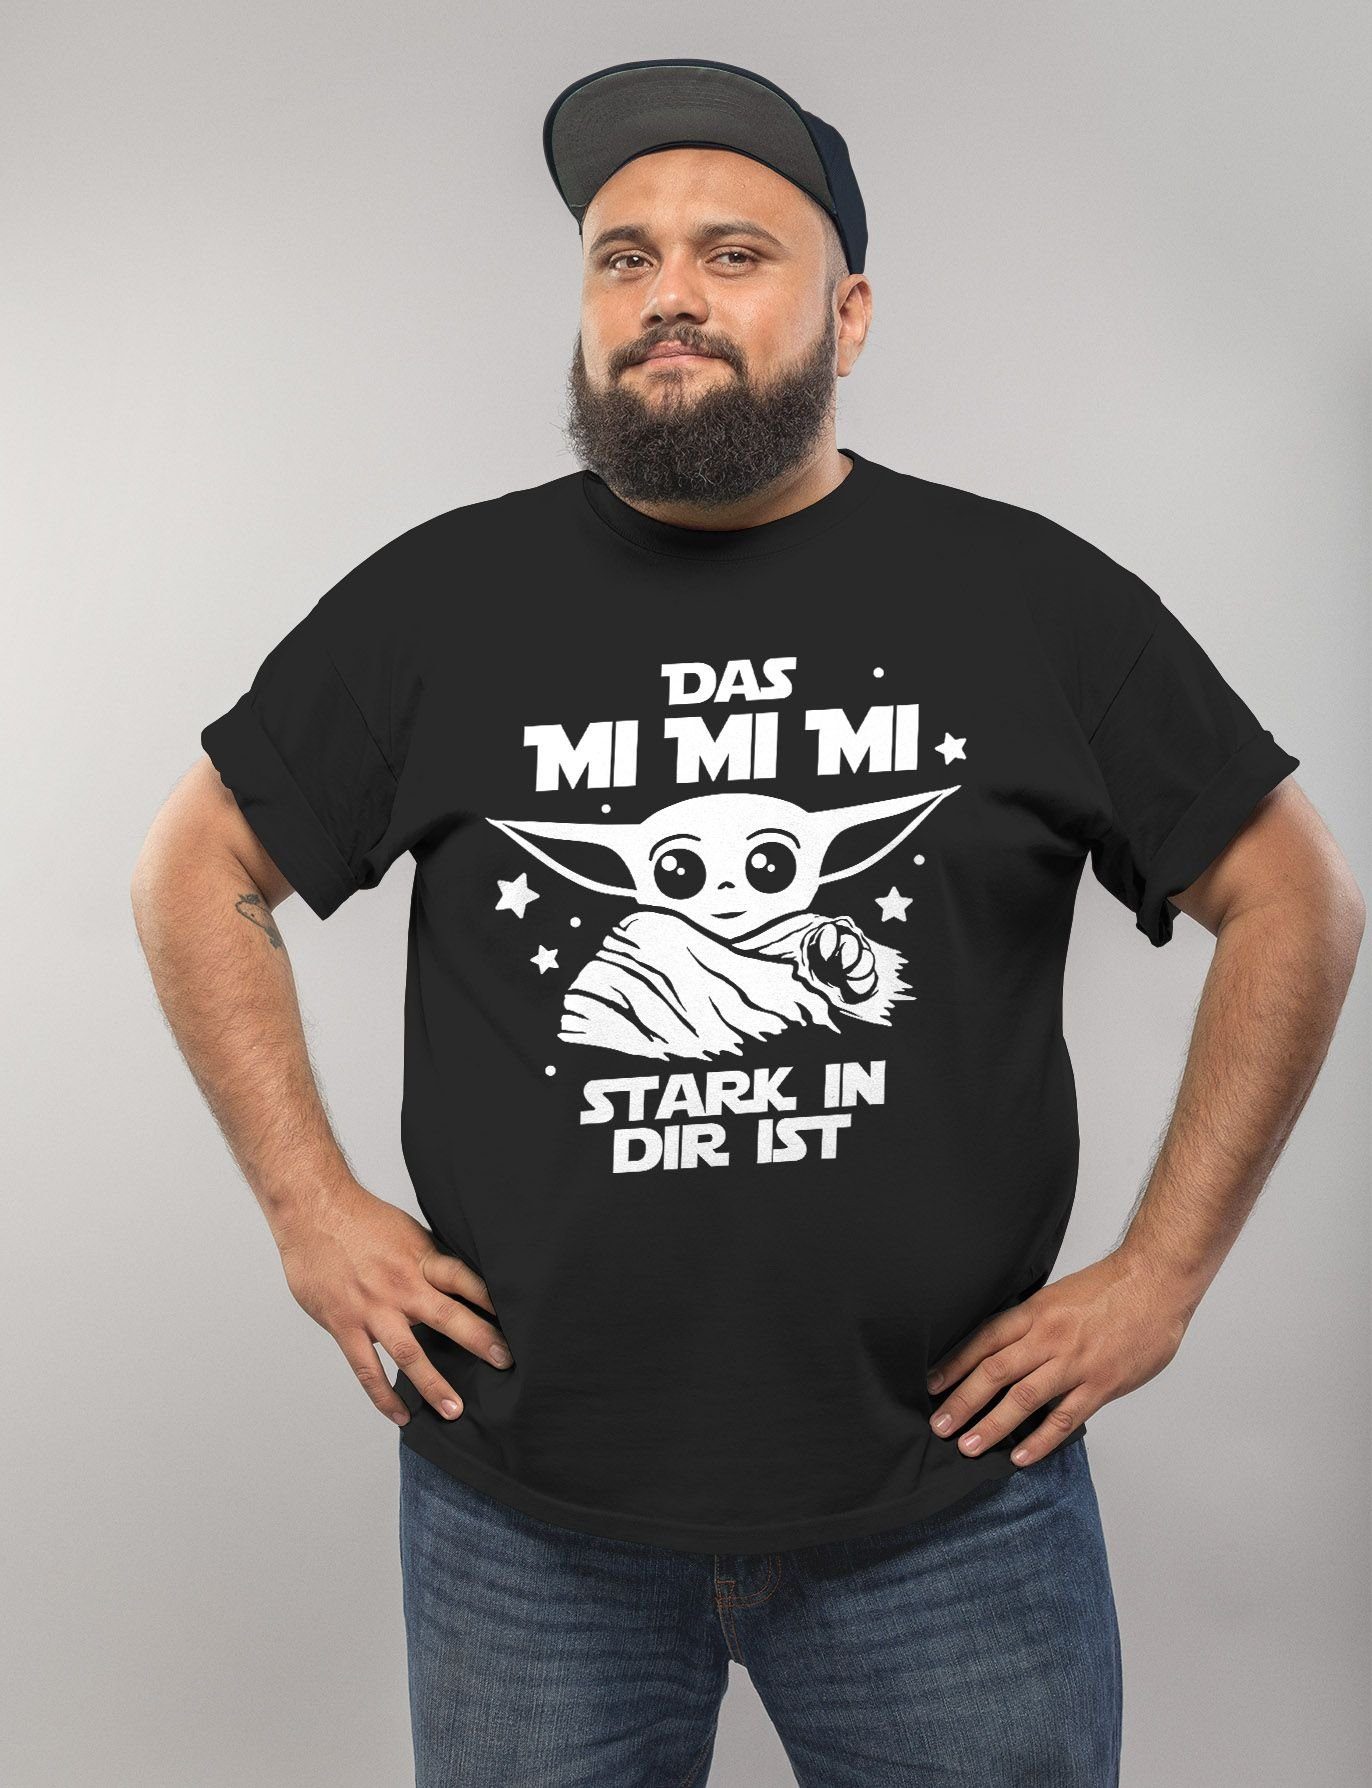 Das Print-Shirt mit Herren Fun-Shirt in ist T-Shirt Print mi MoonWorks stark dir Parodie mi Moonworks® mi Spruch